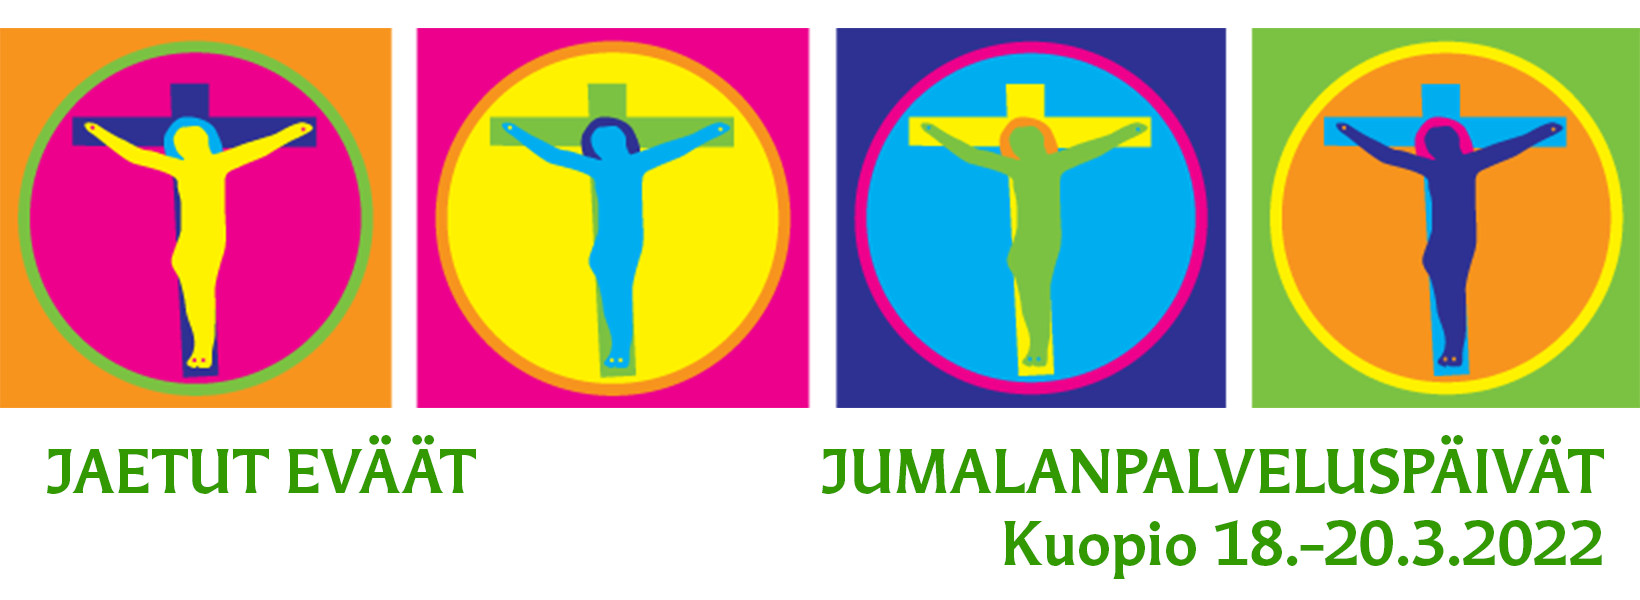 Jaetut eväät Kuopiossa 18.–20.3.2022 -logo